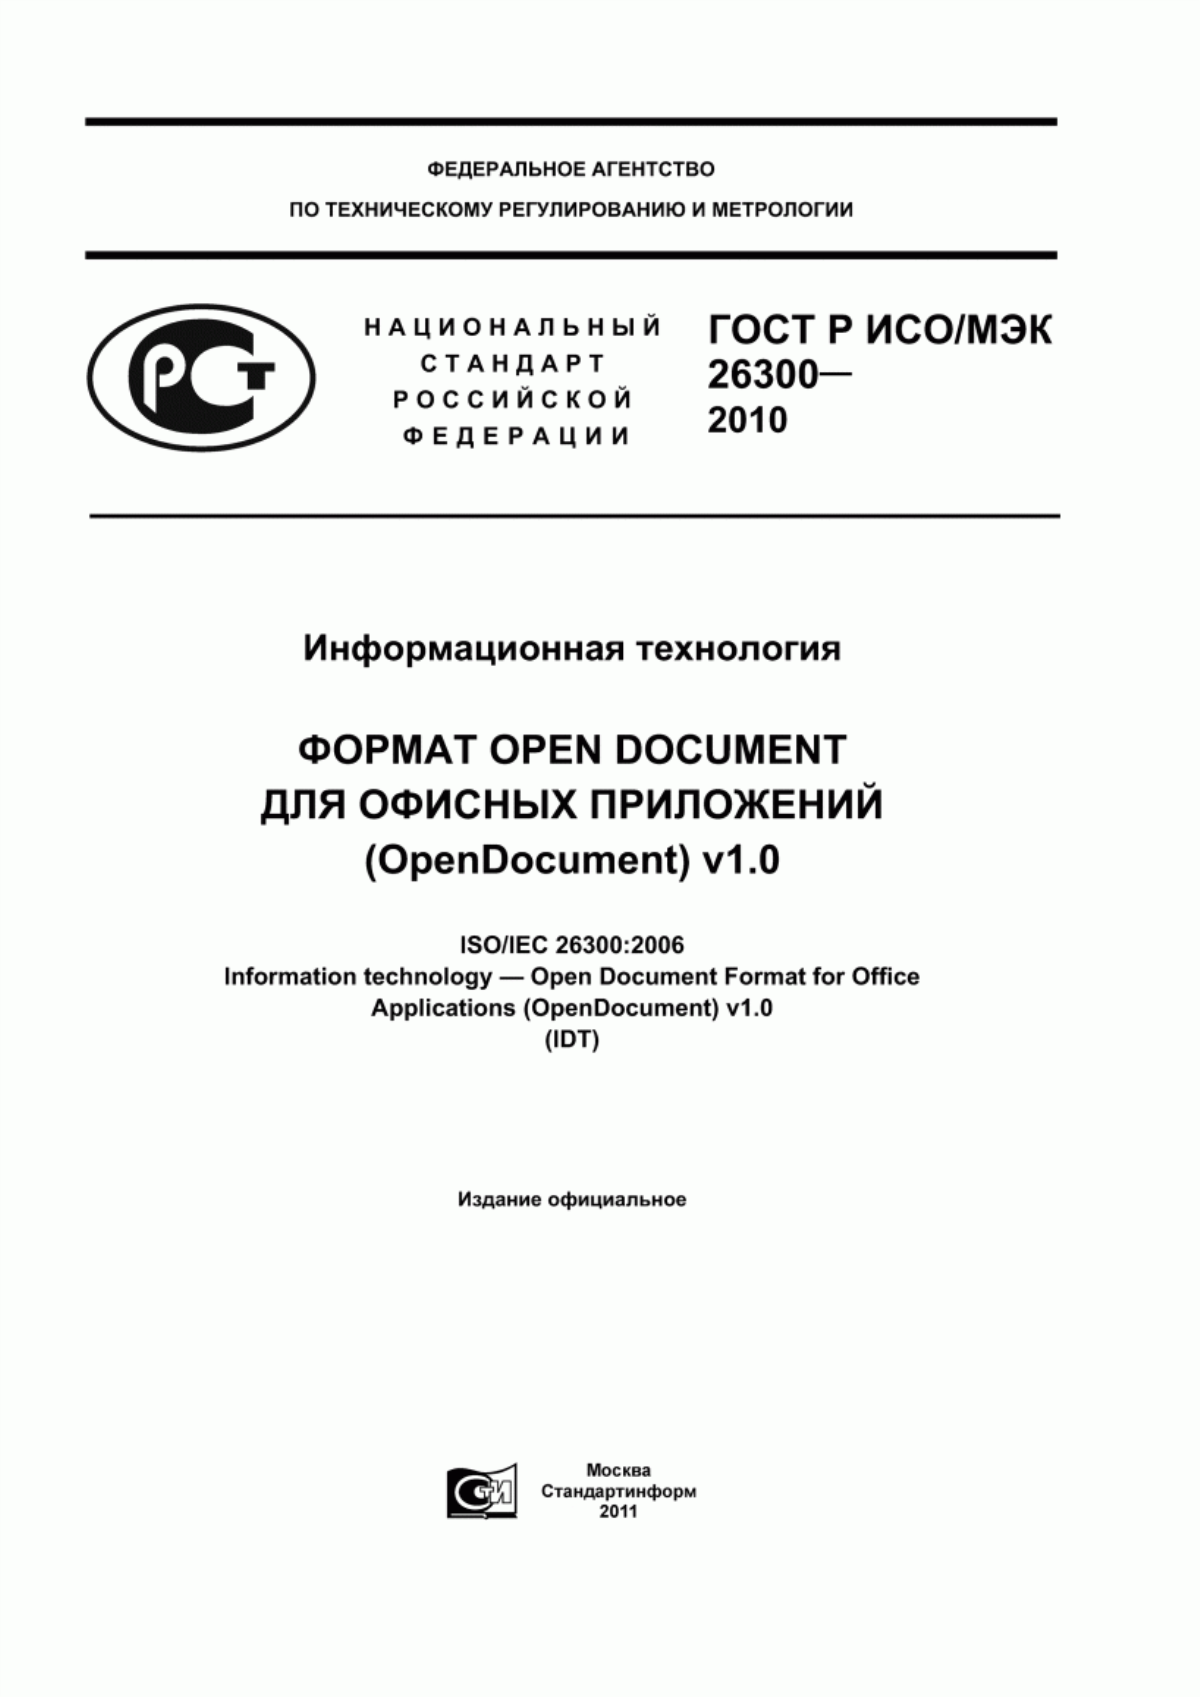 ГОСТ Р ИСО/МЭК 26300-2010 Информационная технология. Формат Open Document для офисных приложений (OpenDocument) v1.0